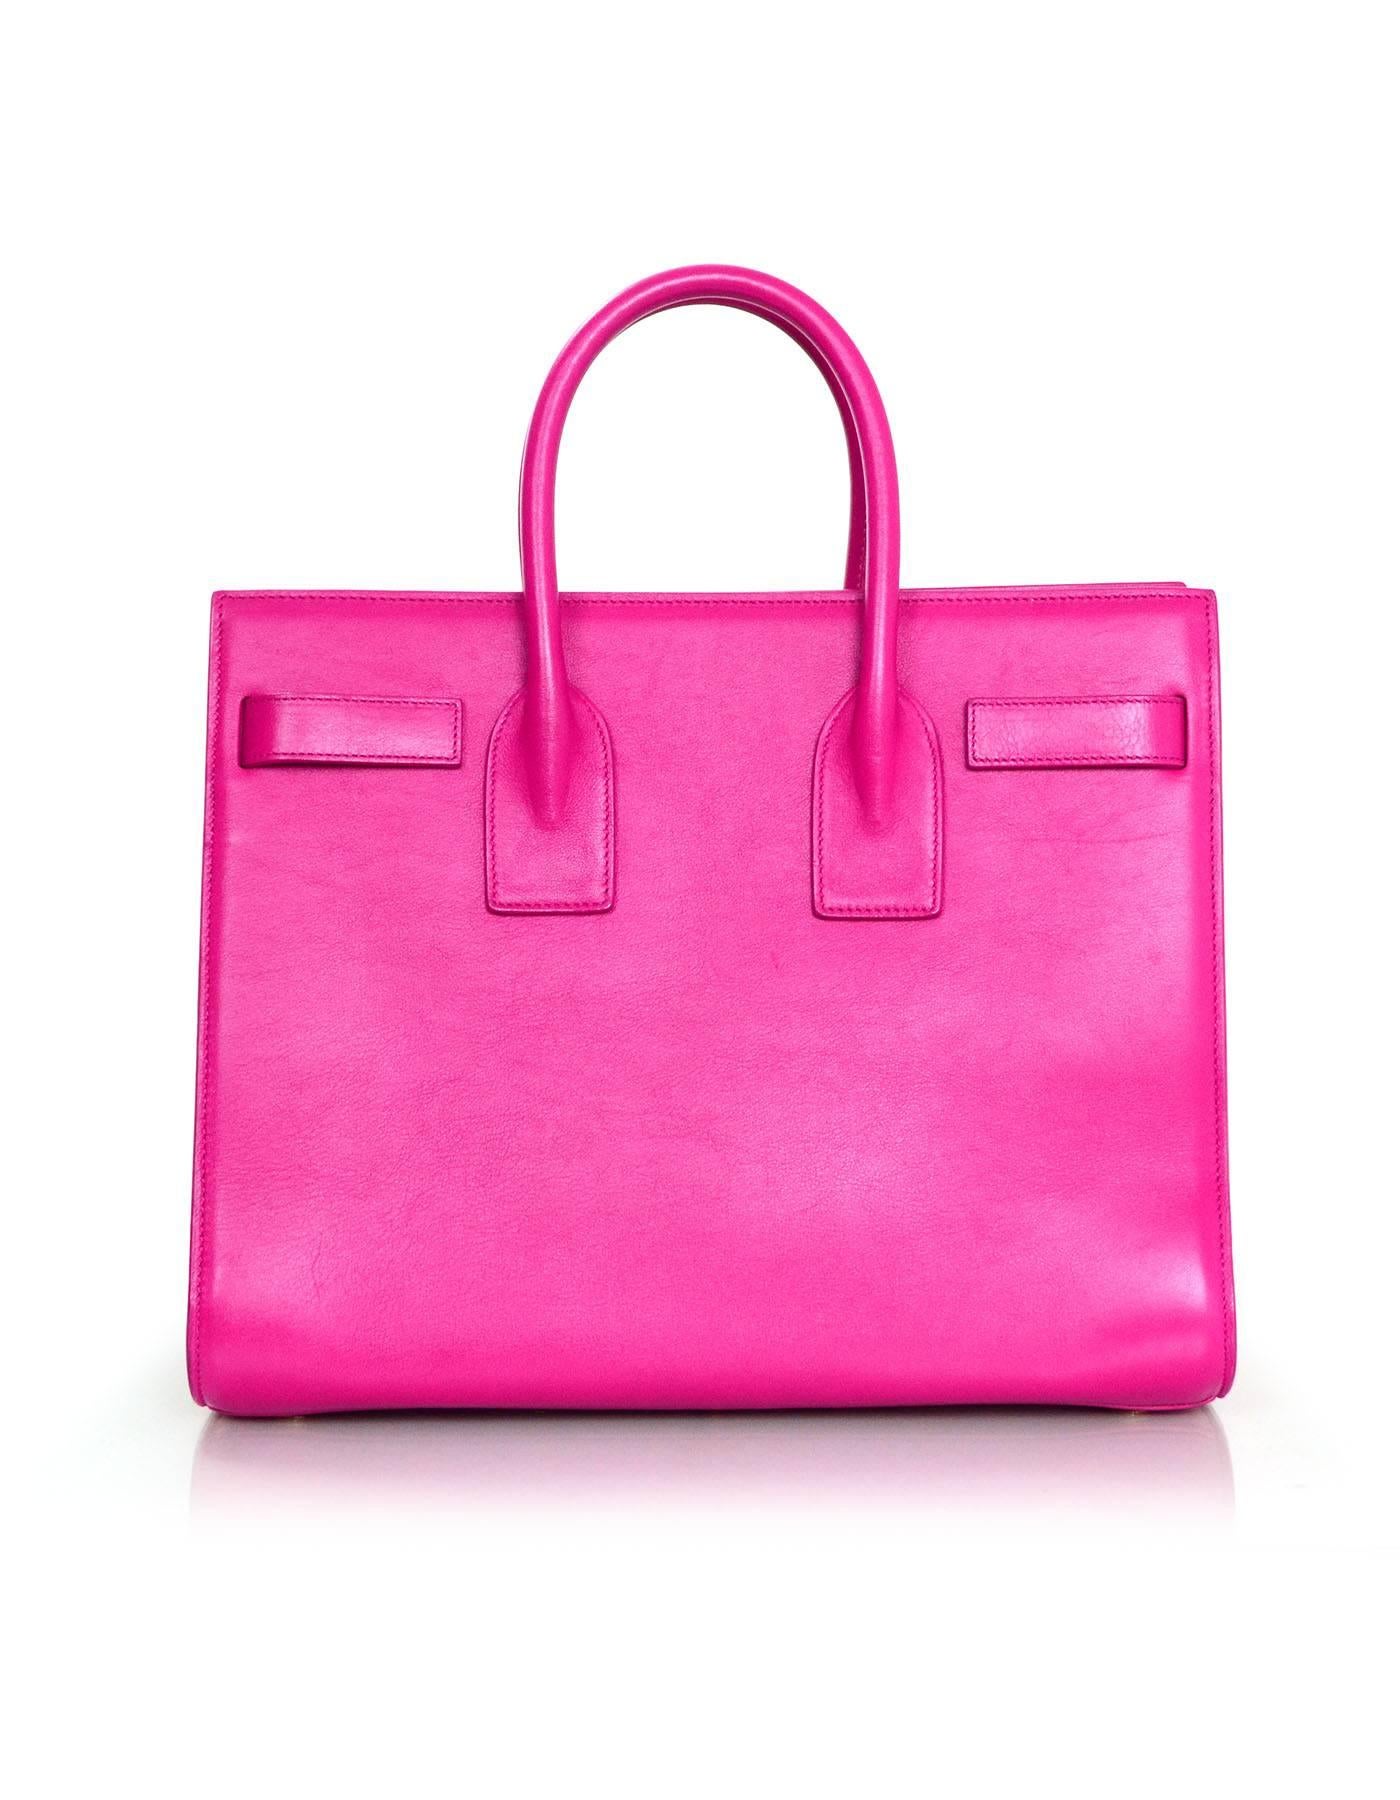 Women's Saint Laurent Pink Small Sac De Jour Tote Bag w/ Strap